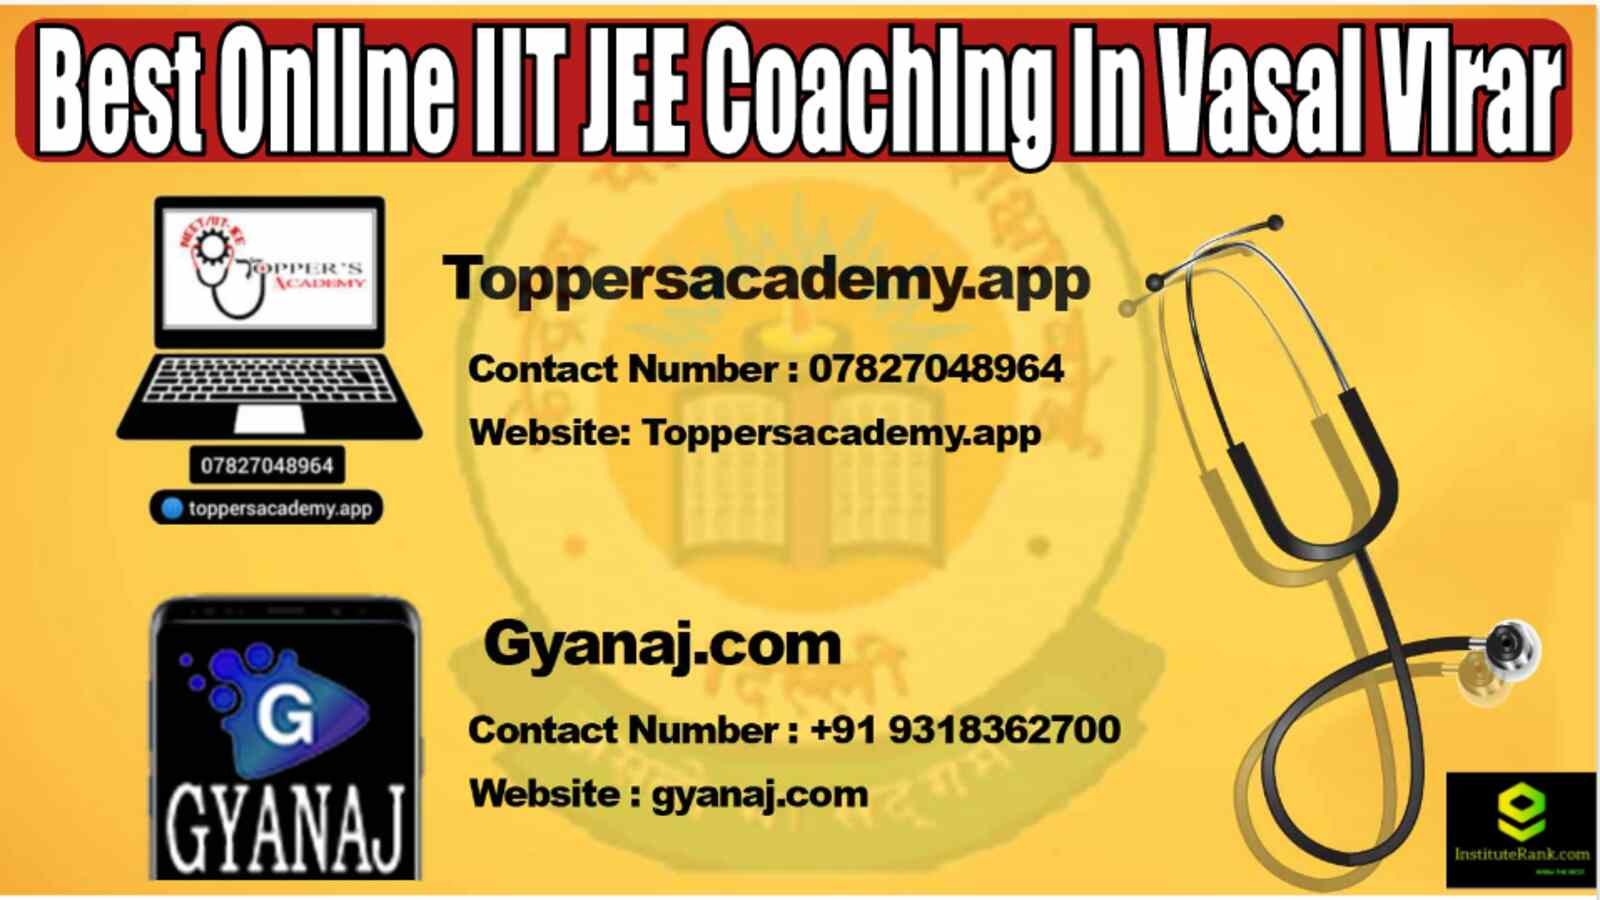 Best Online IIT JEE Coaching in Vasai Virar 2022 - Copy